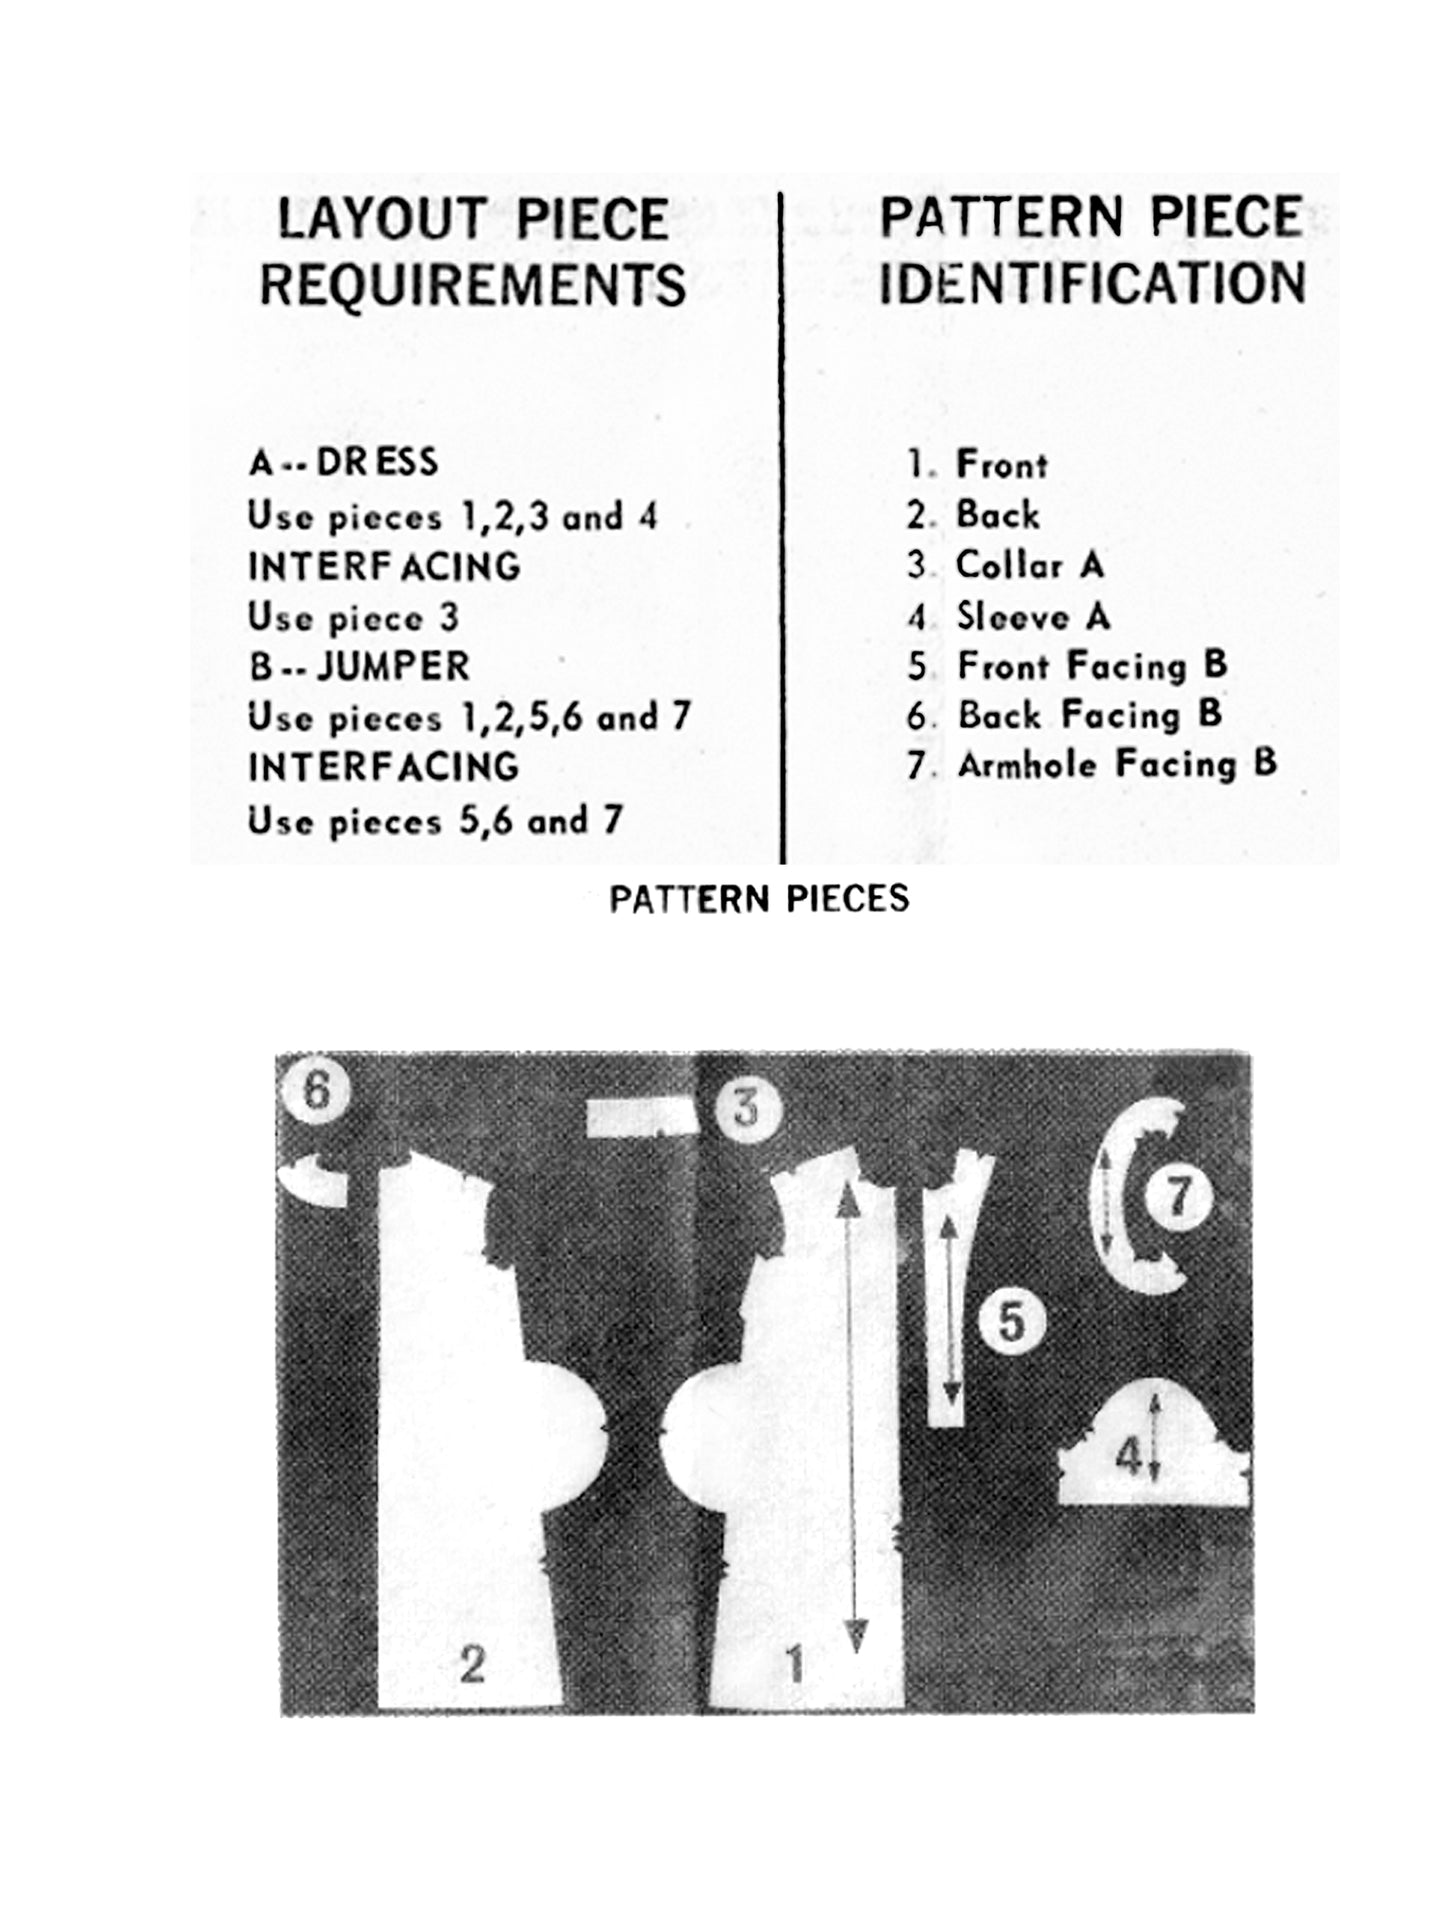 PDF Pattern - 70s Jumper/Dress, Digital Sewing Pattern / Child 14